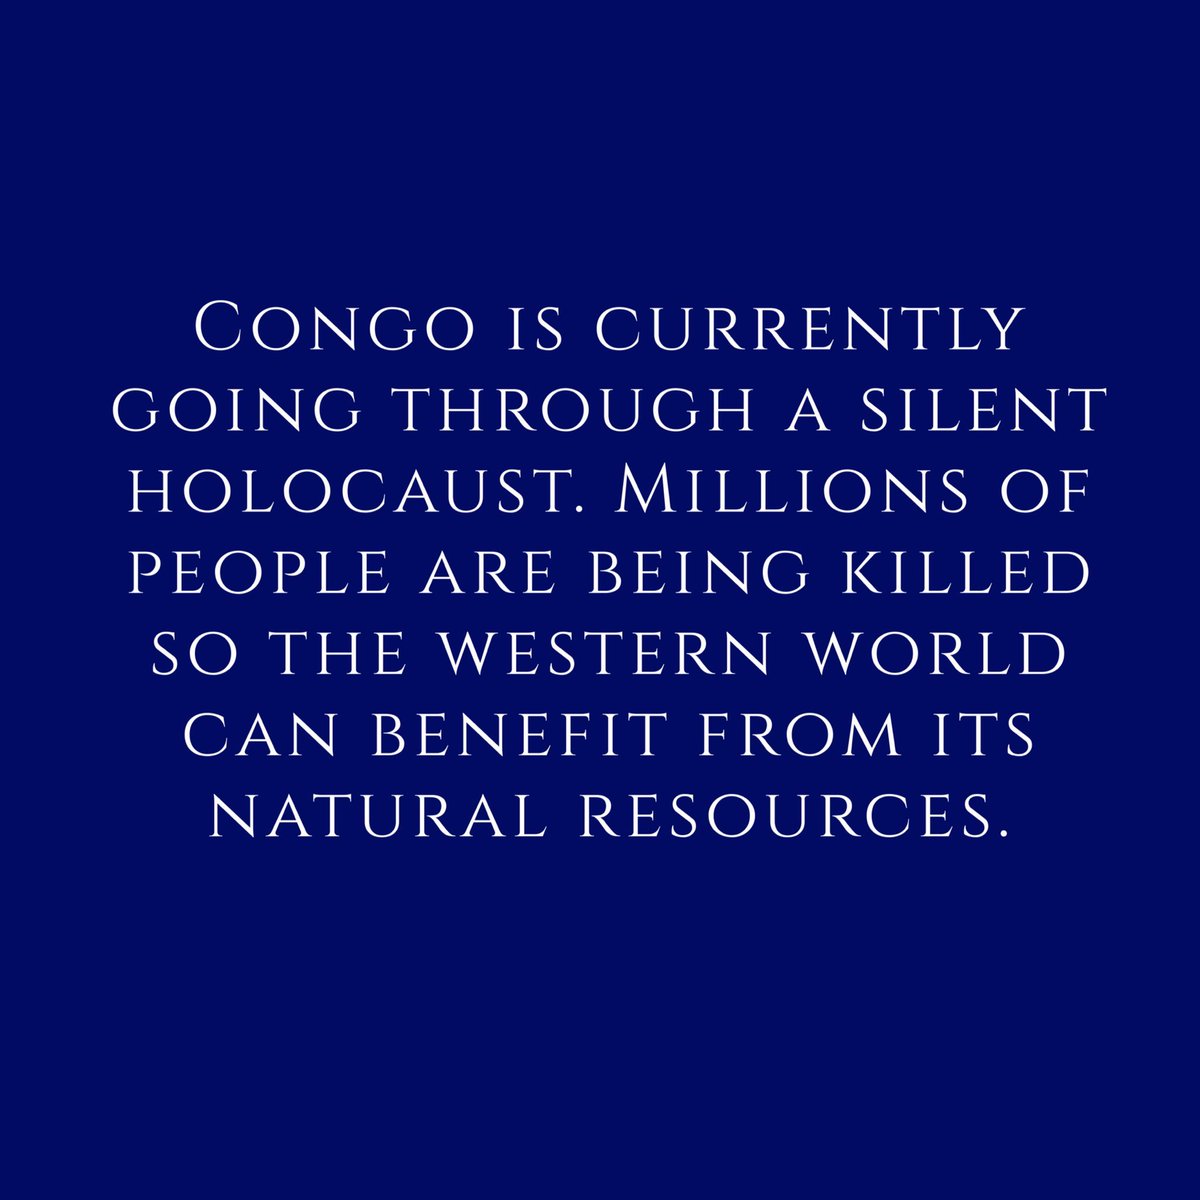 Why is Congo not trending yet?